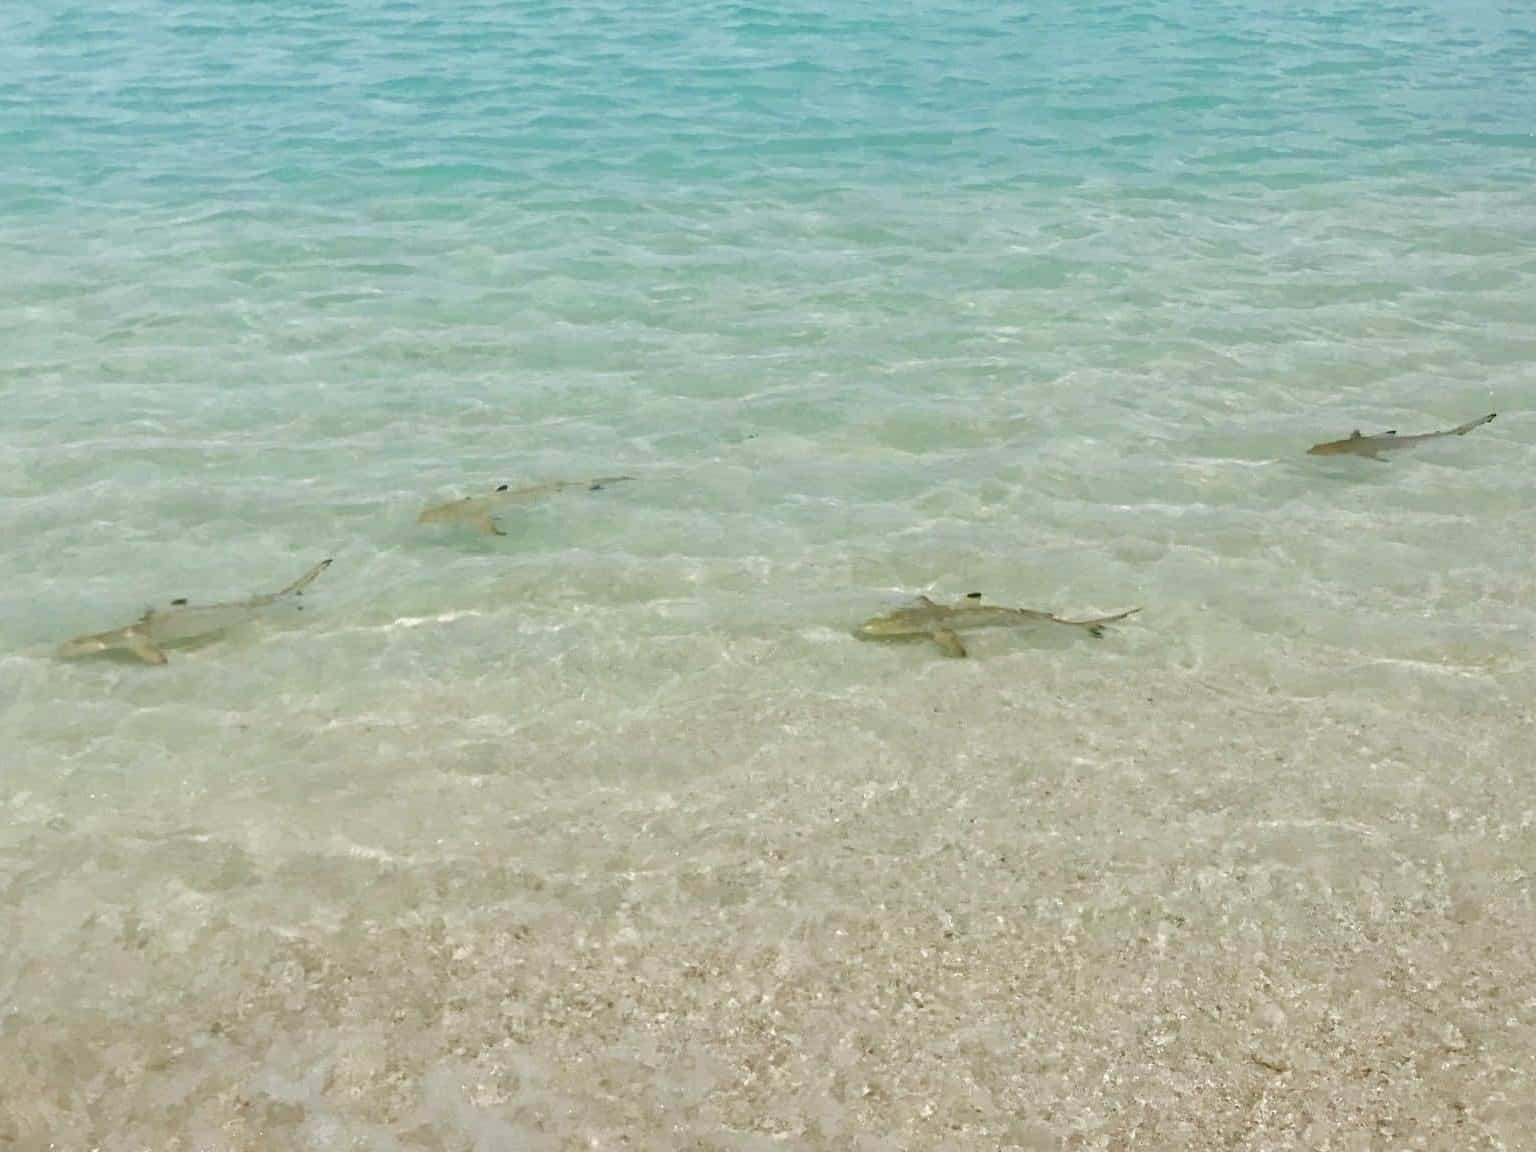 Specie di squali alle Maldive – pericolosi per i vacanzieri quando nuotano?